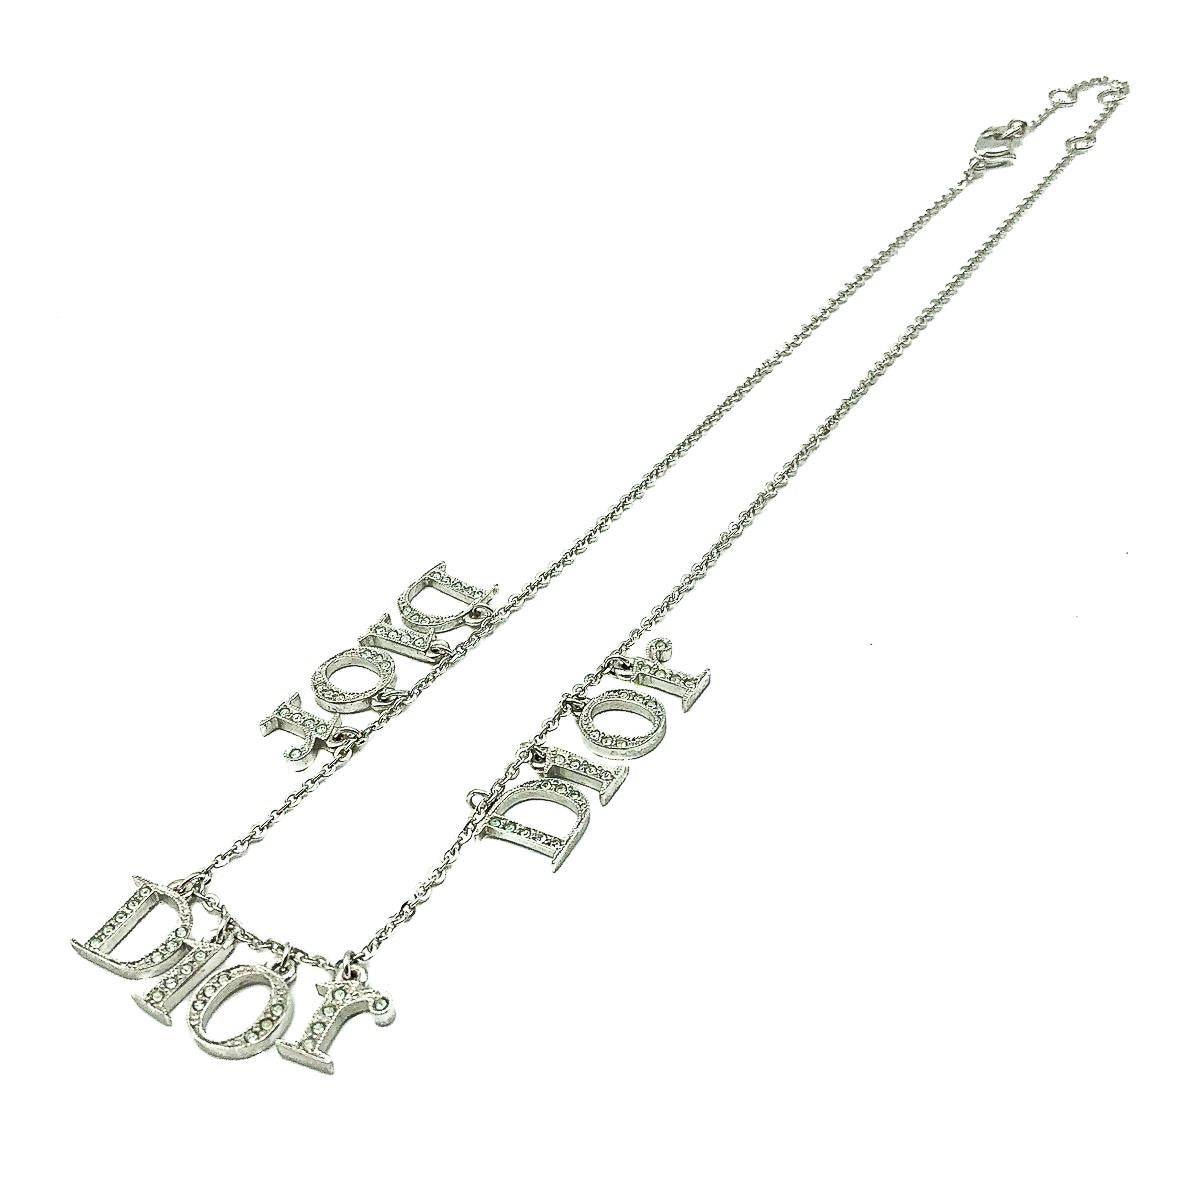 Eine Vintage Dior Spell Out Halskette. Mit einer fabelhaften Reihe von kristallbesetzten Anhängern, die nicht nur einmal, sondern dreimal den Namen Dior tragen. Hergestellt aus rhodiniertem Metall. Signiert, in sehr gutem Vintage-Zustand, ca. 38cm -